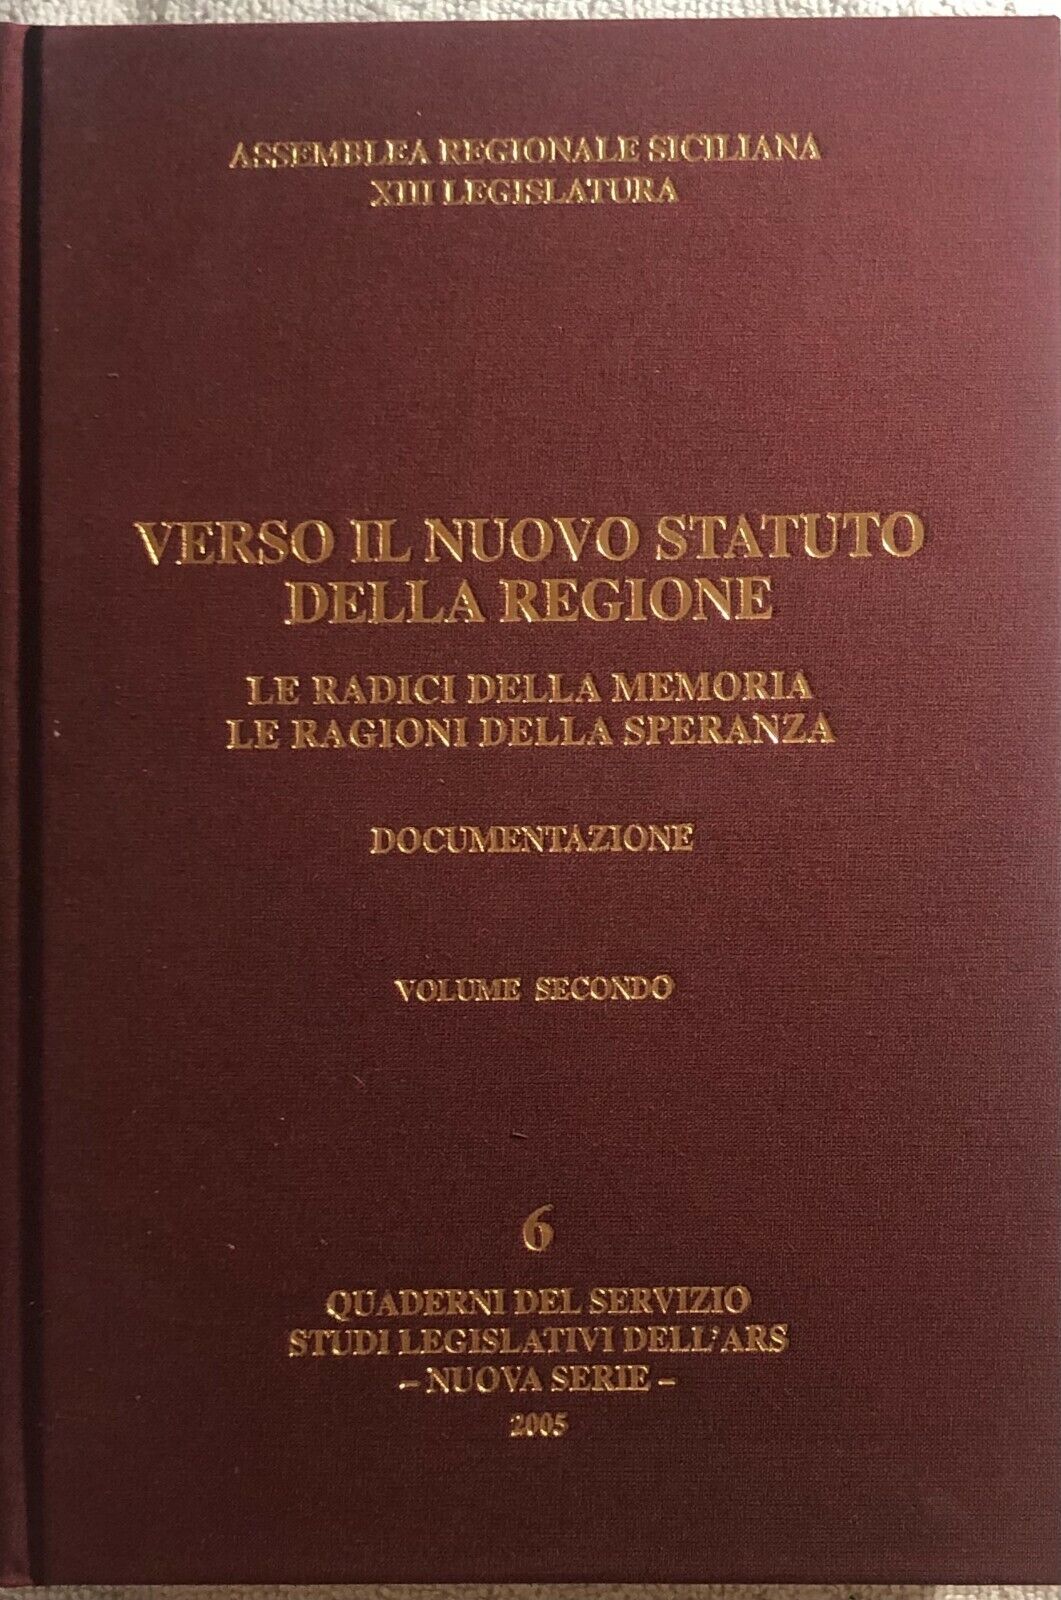 Verso il nuovo statuto della Regione n. 6 di Aa.vv.,  2005,  Assemblea Regionale